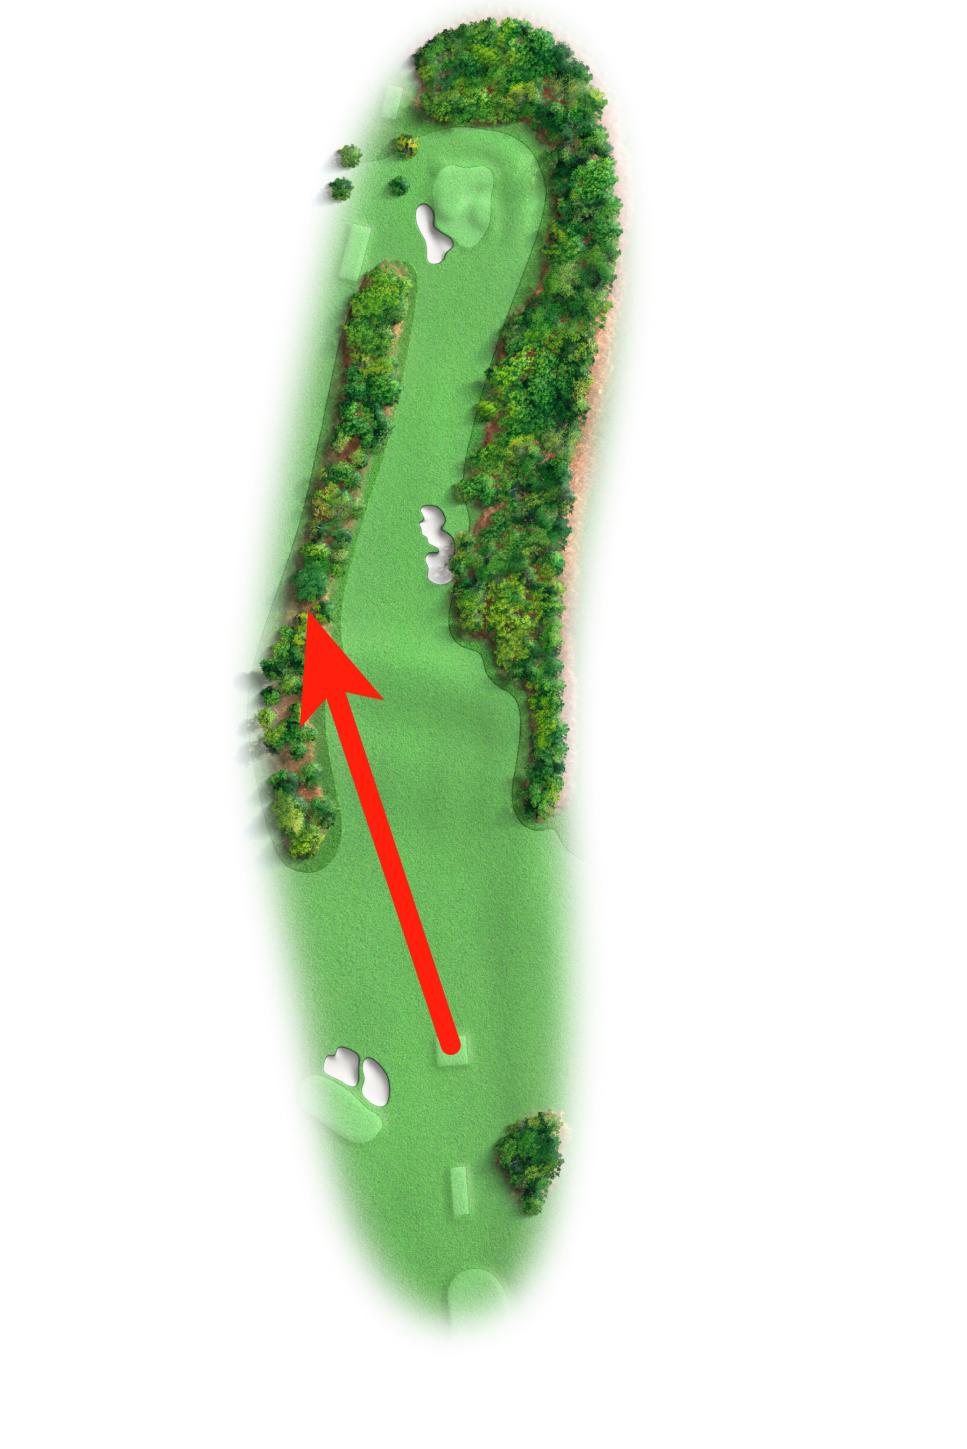 https://www.golfdigest.com/content/dam/images/golfdigest/fullset/2024/4/augusta-national-bogey-golfers-guide-first-hole.jpg